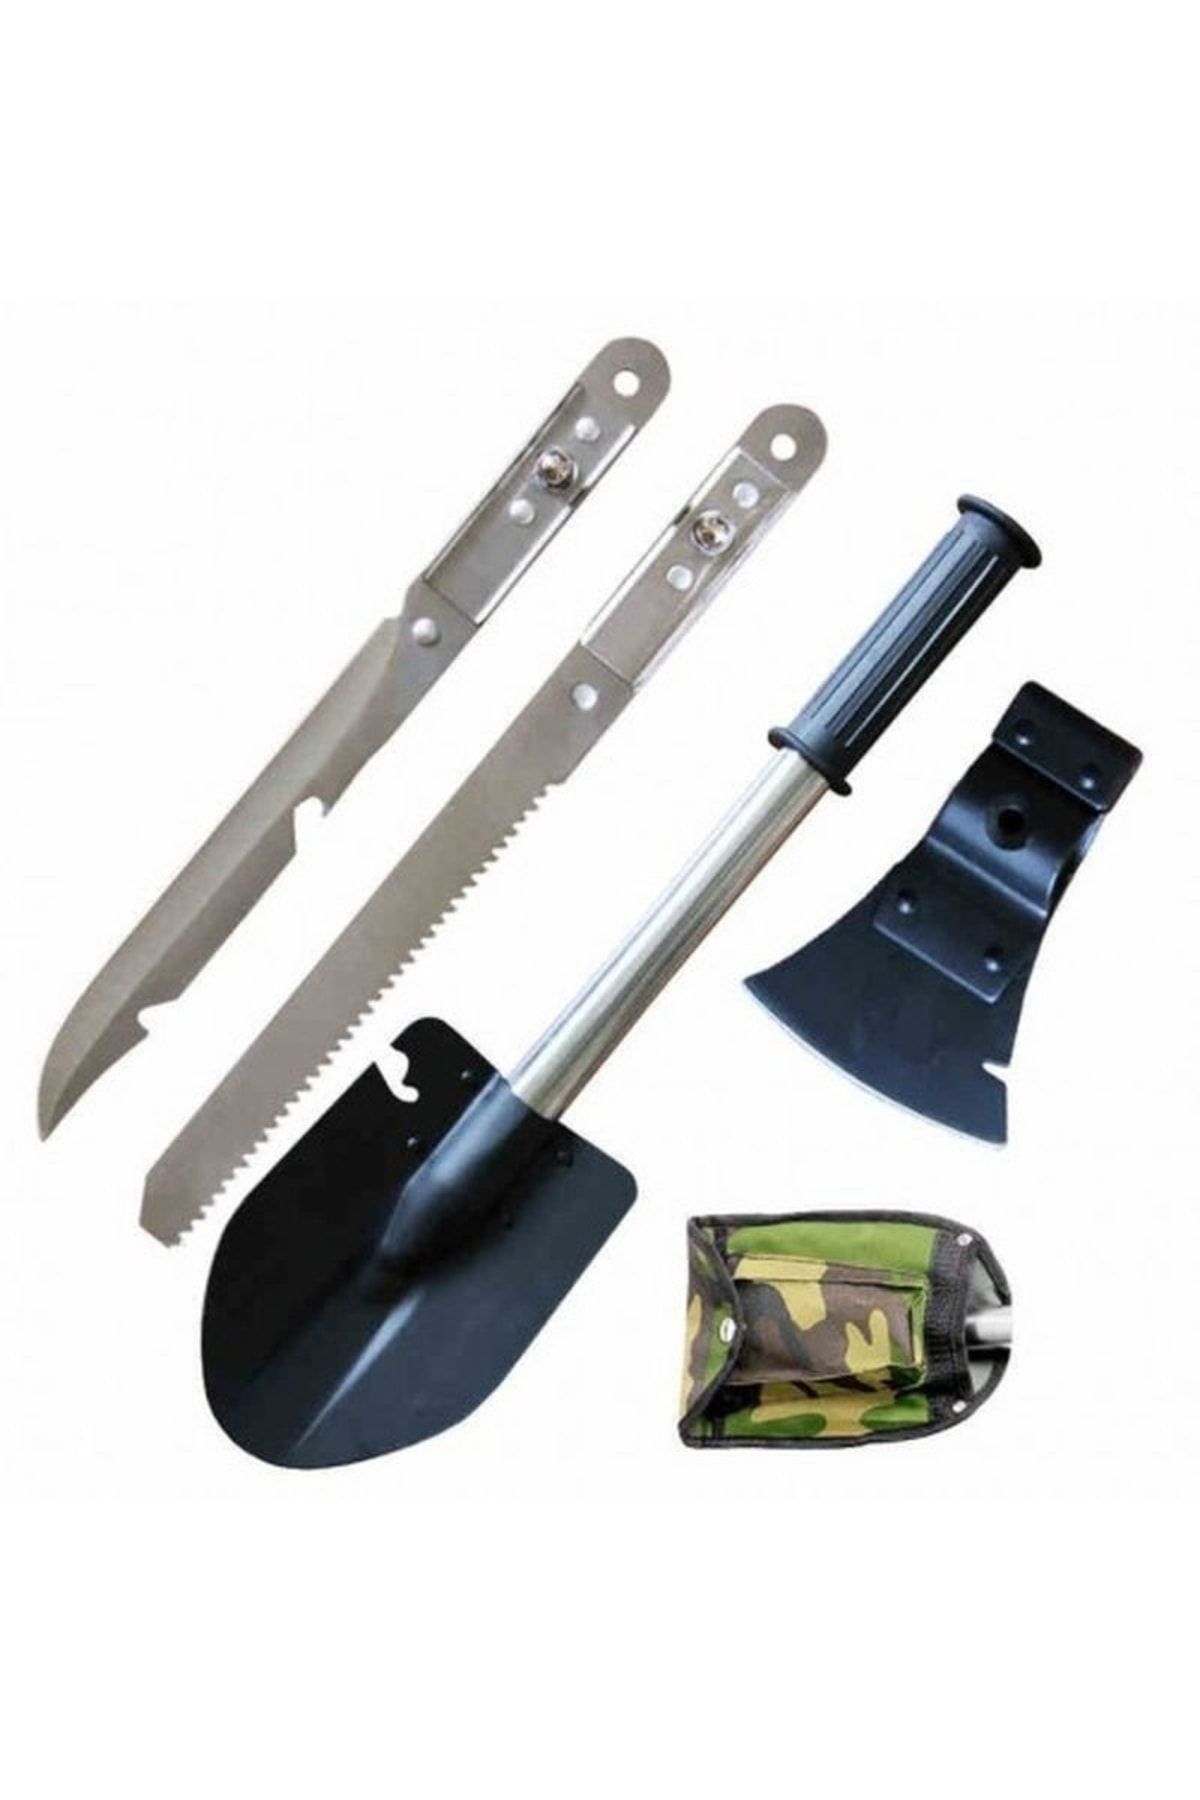 Genel Markalar Adipa Tg2 Için Kürek Balta Testere Bıçak Takımı 4 Lü Set